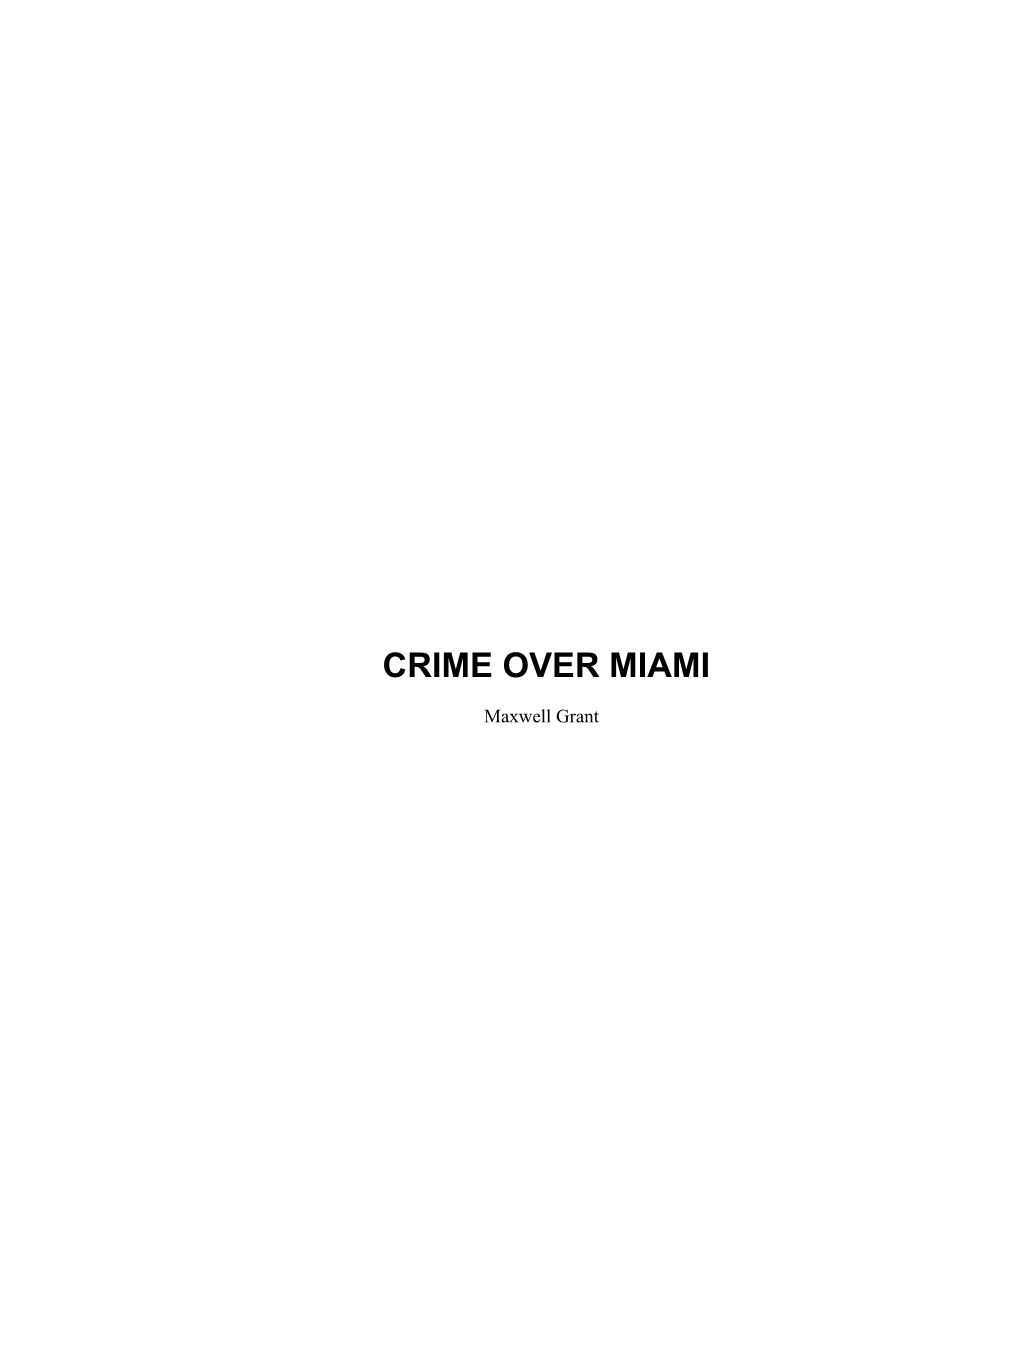 Crime Over Miami